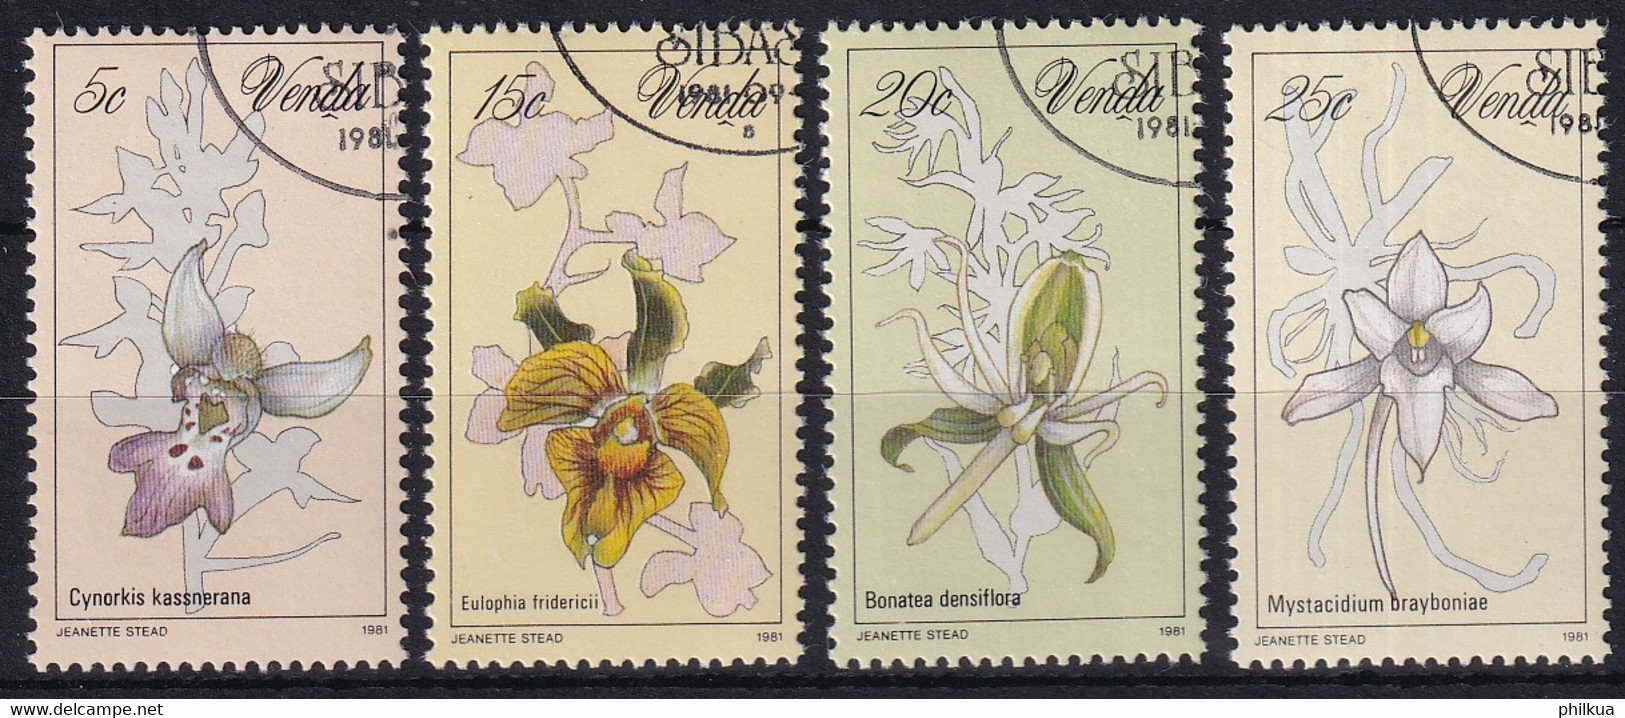 MiNr. 46 - 49 Südafrika, Venda 1981, 11. Sept. Orchideen - Sauber Gestempelt - Venda